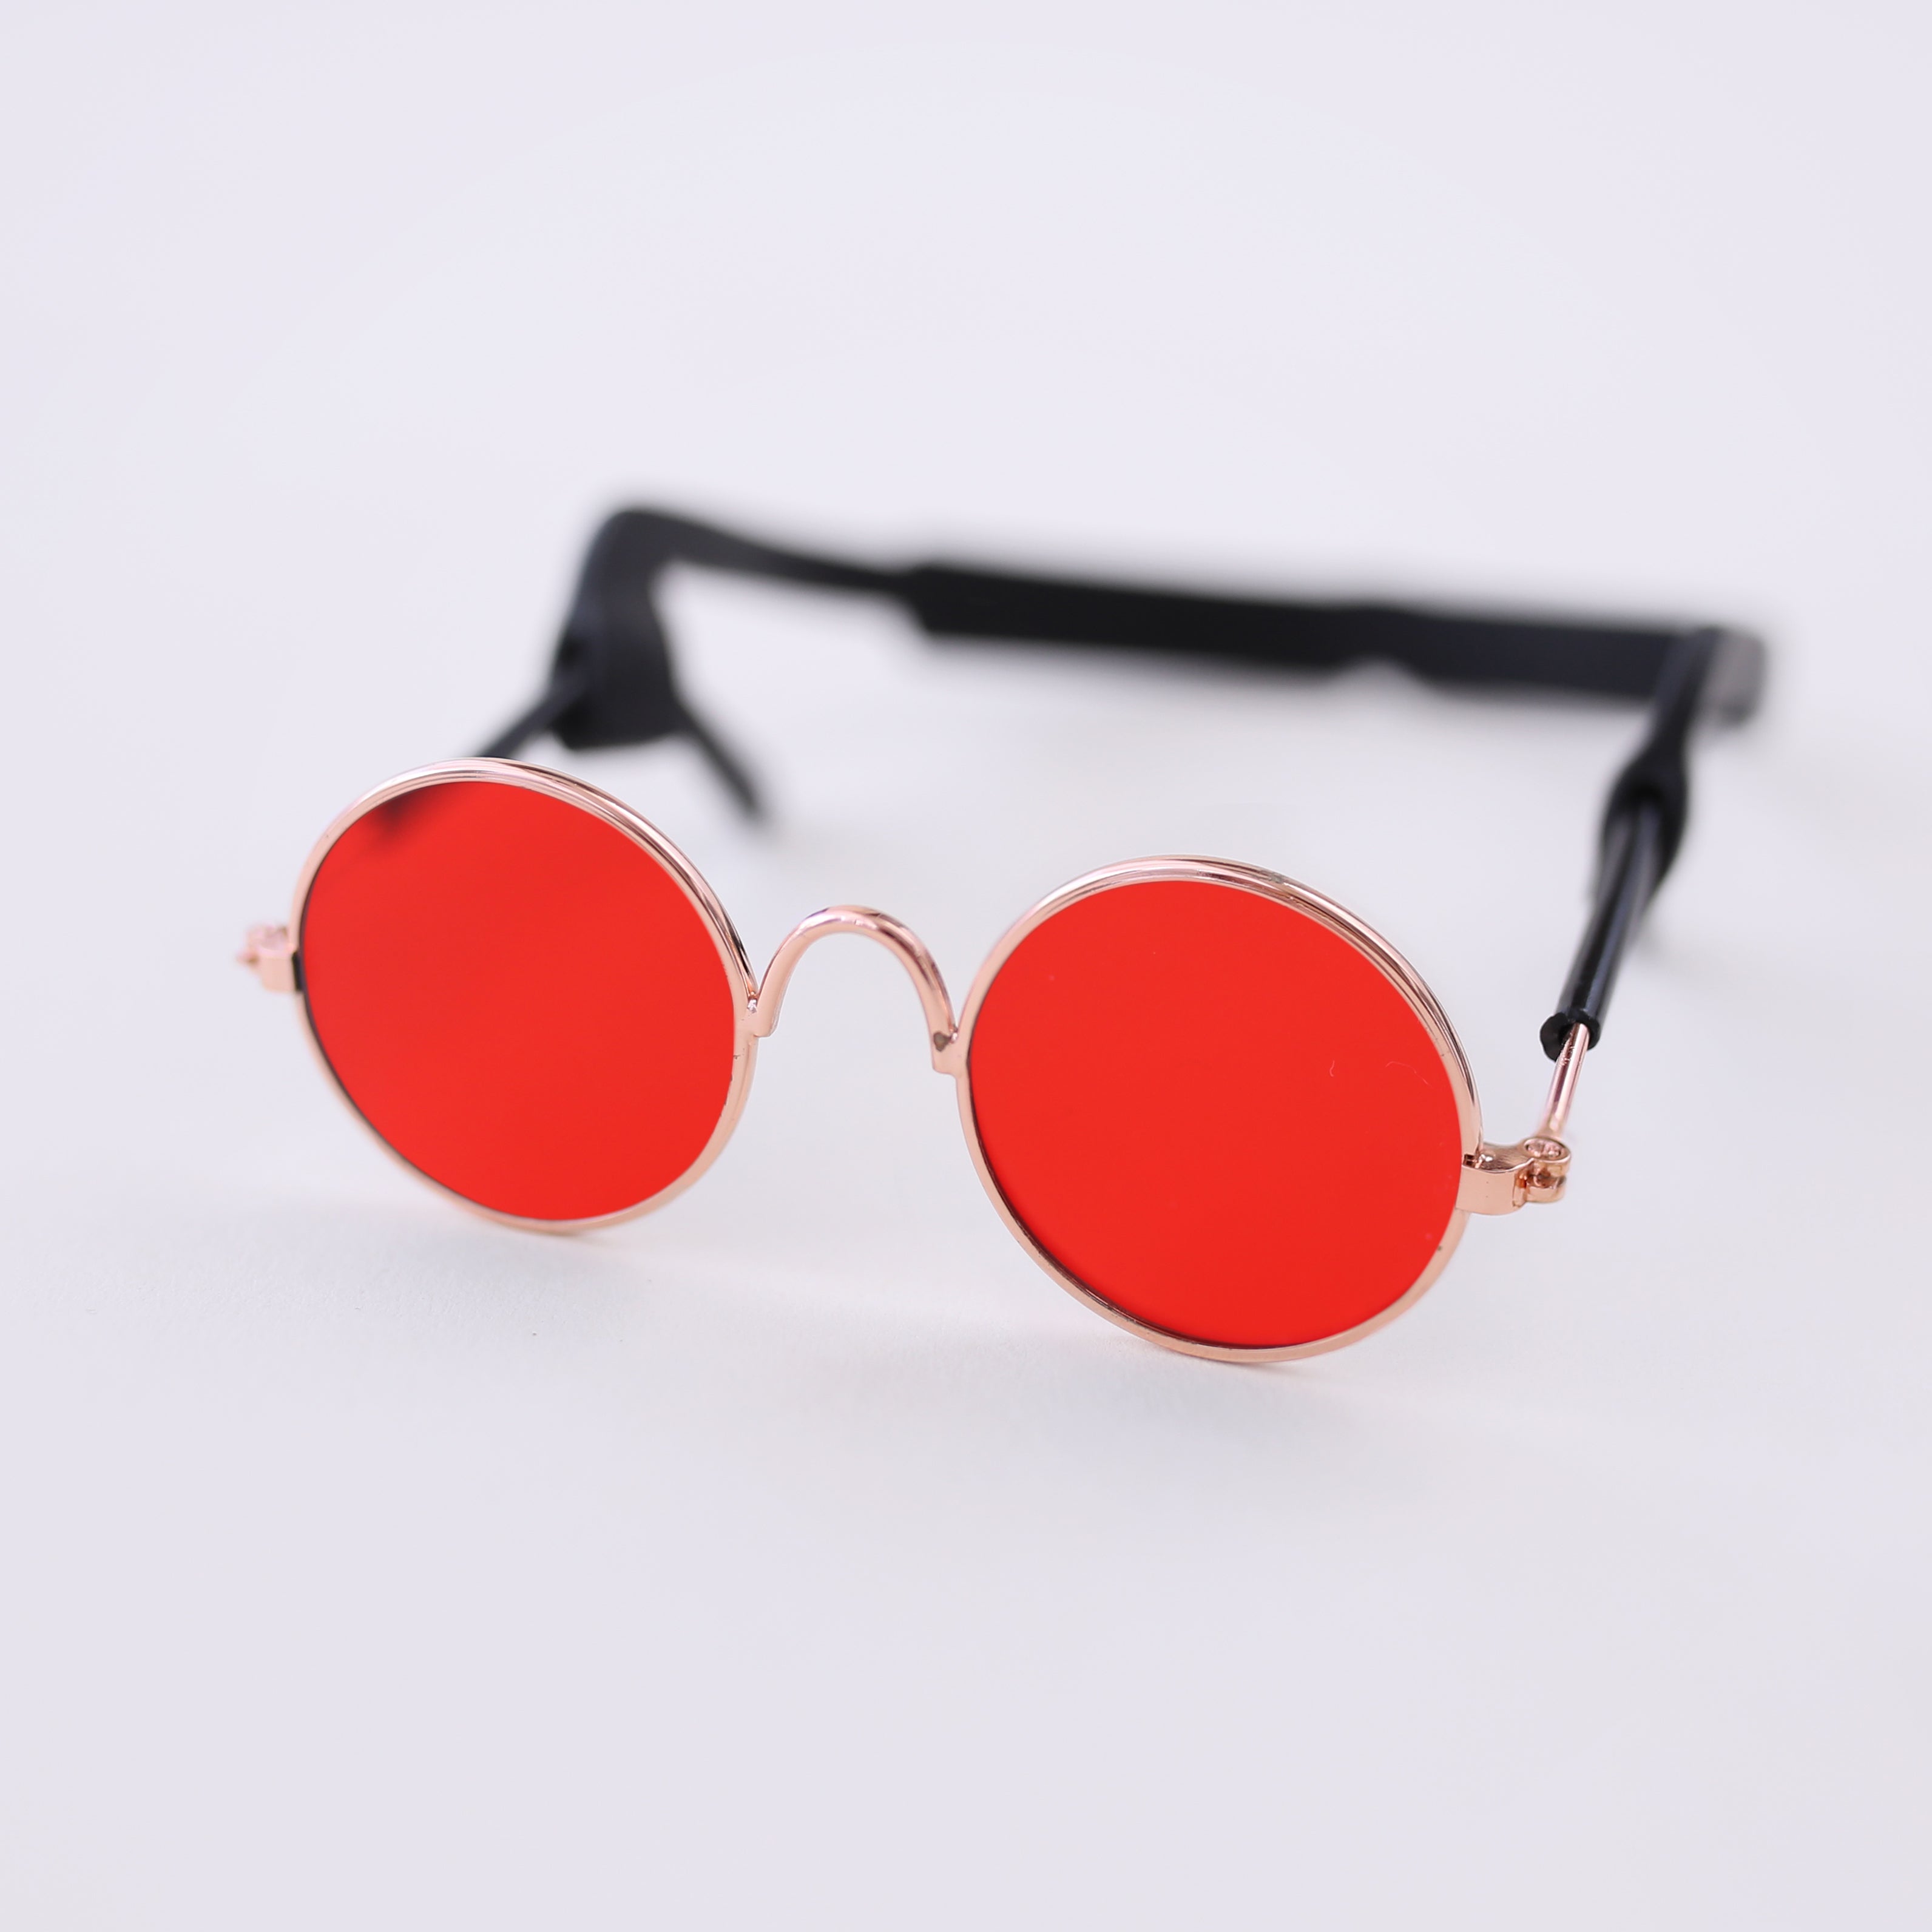 Dog eyewear - Red Retro Dog Sunglasses